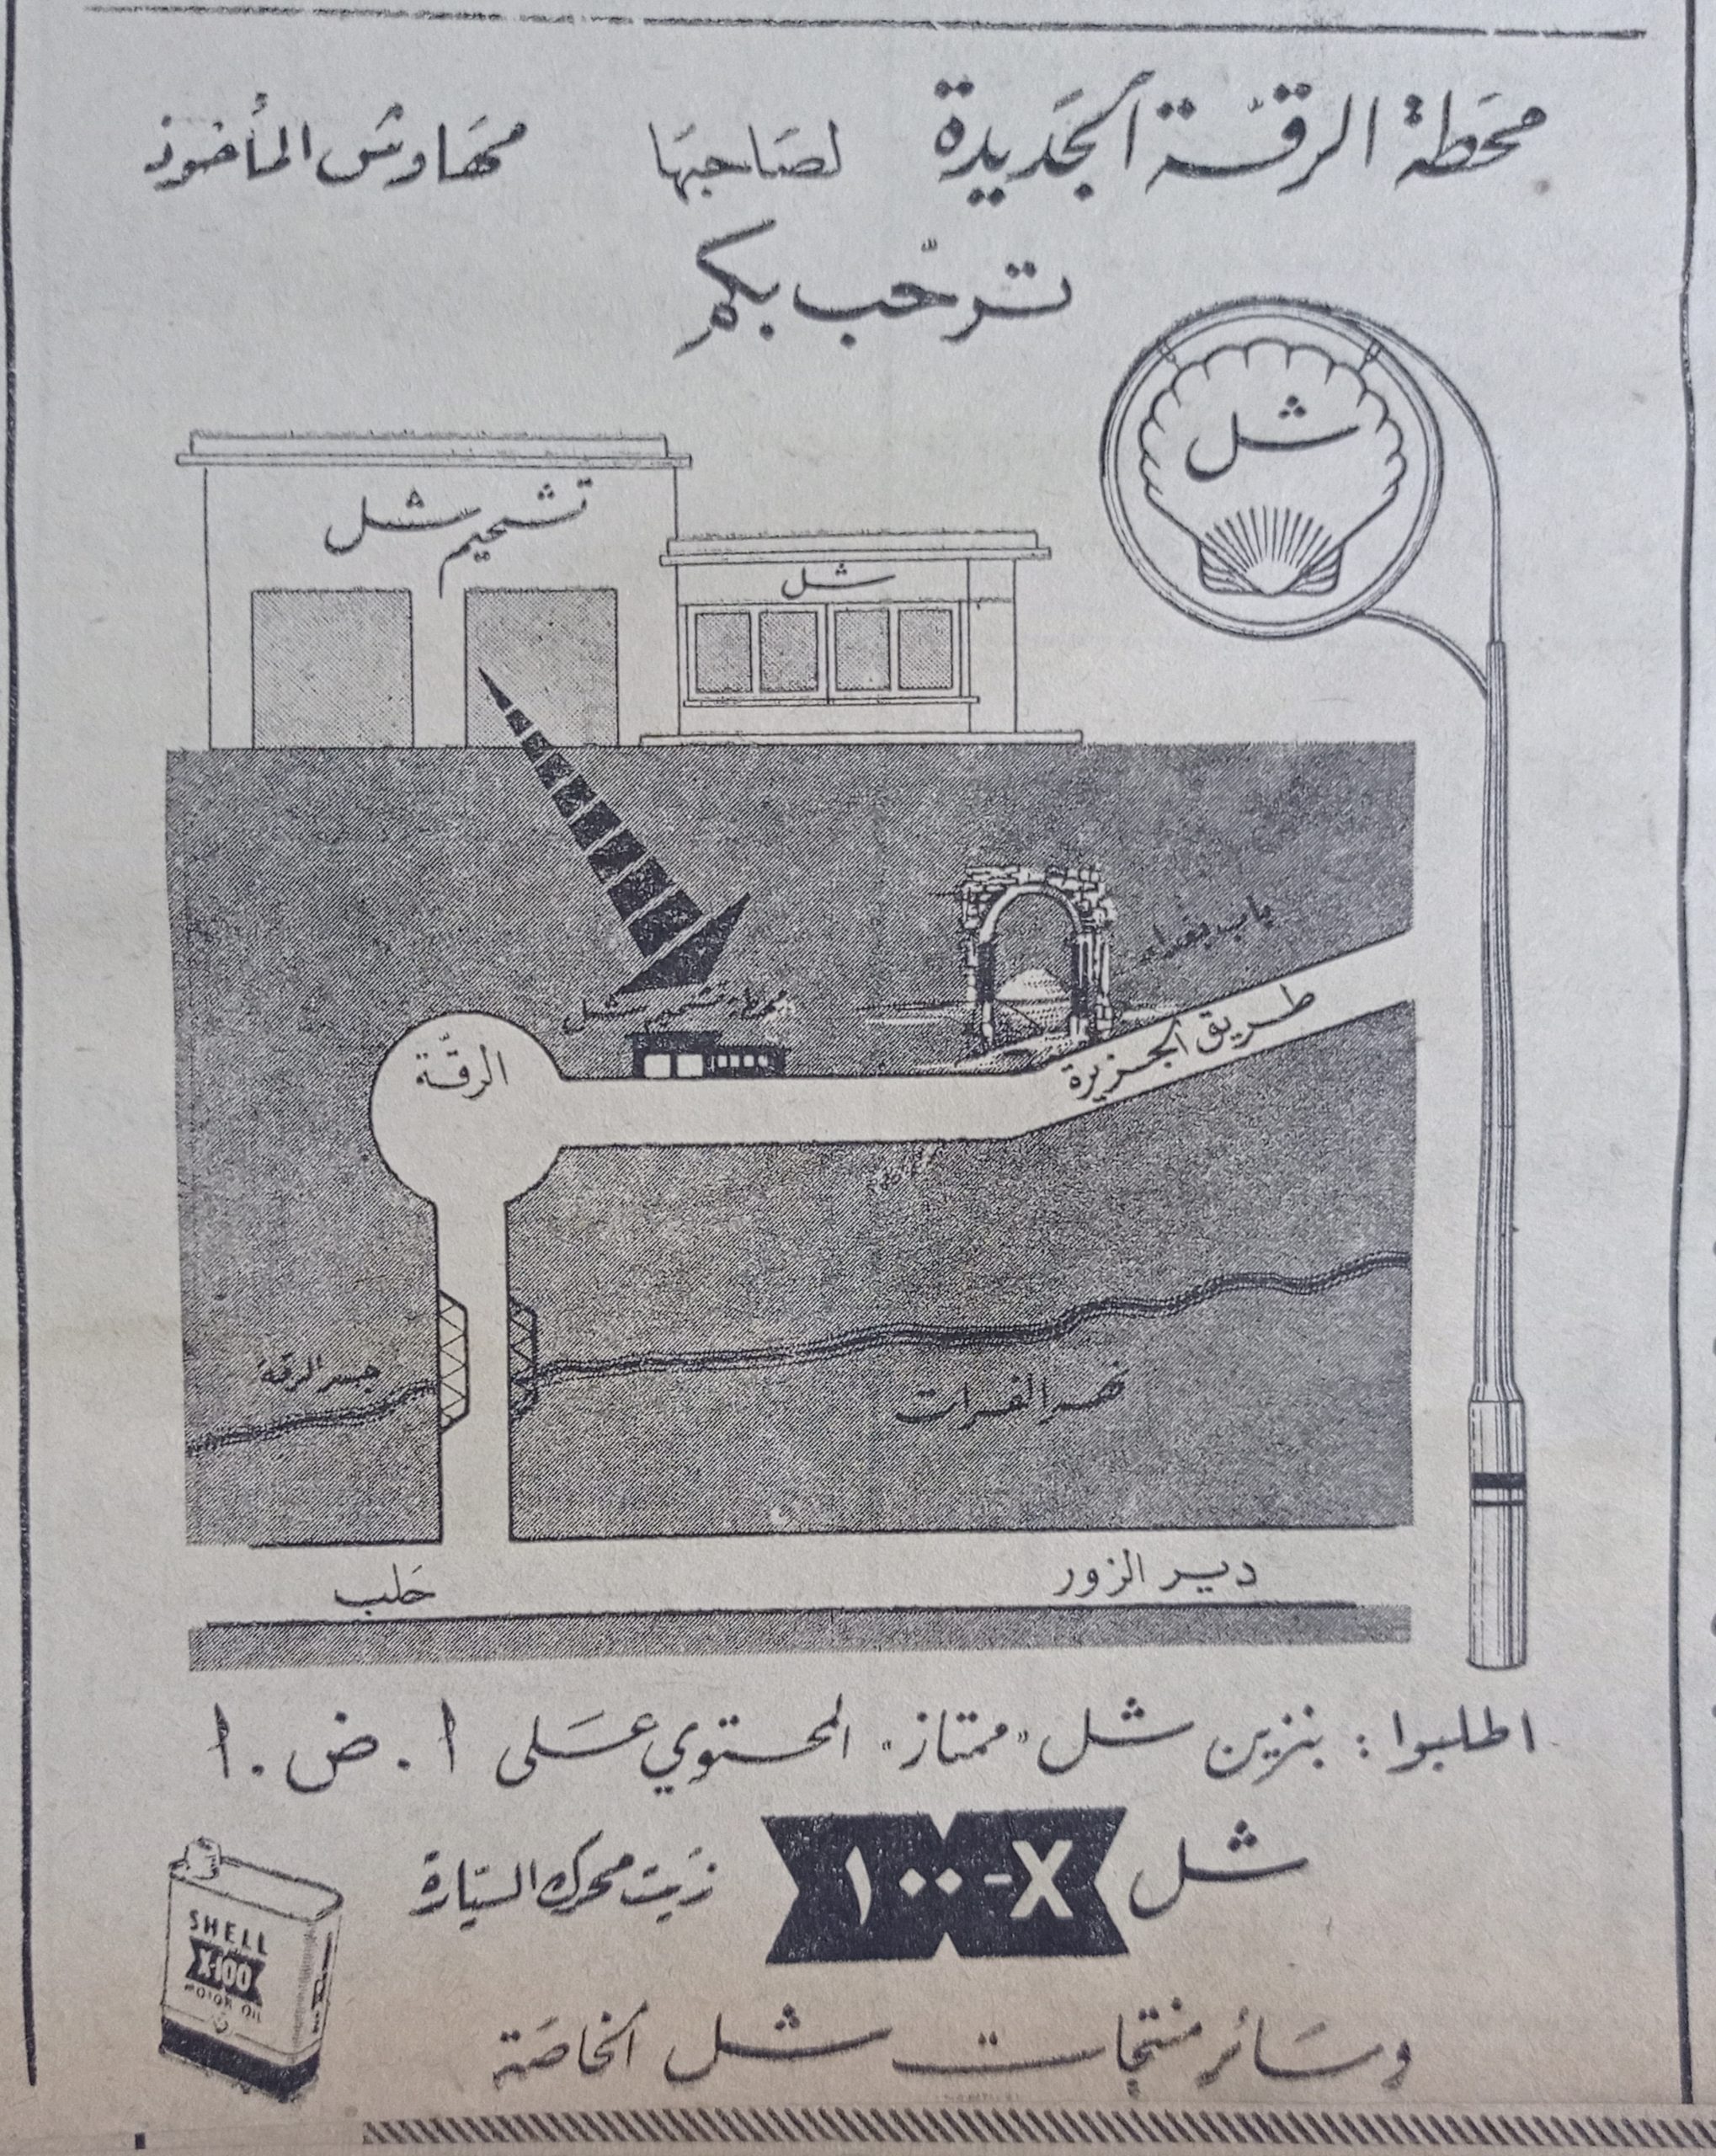 التاريخ السوري المعاصر - إعلان محطة بنزين الرقة الجديدة وسائر منتجات شركة شل عام 1956